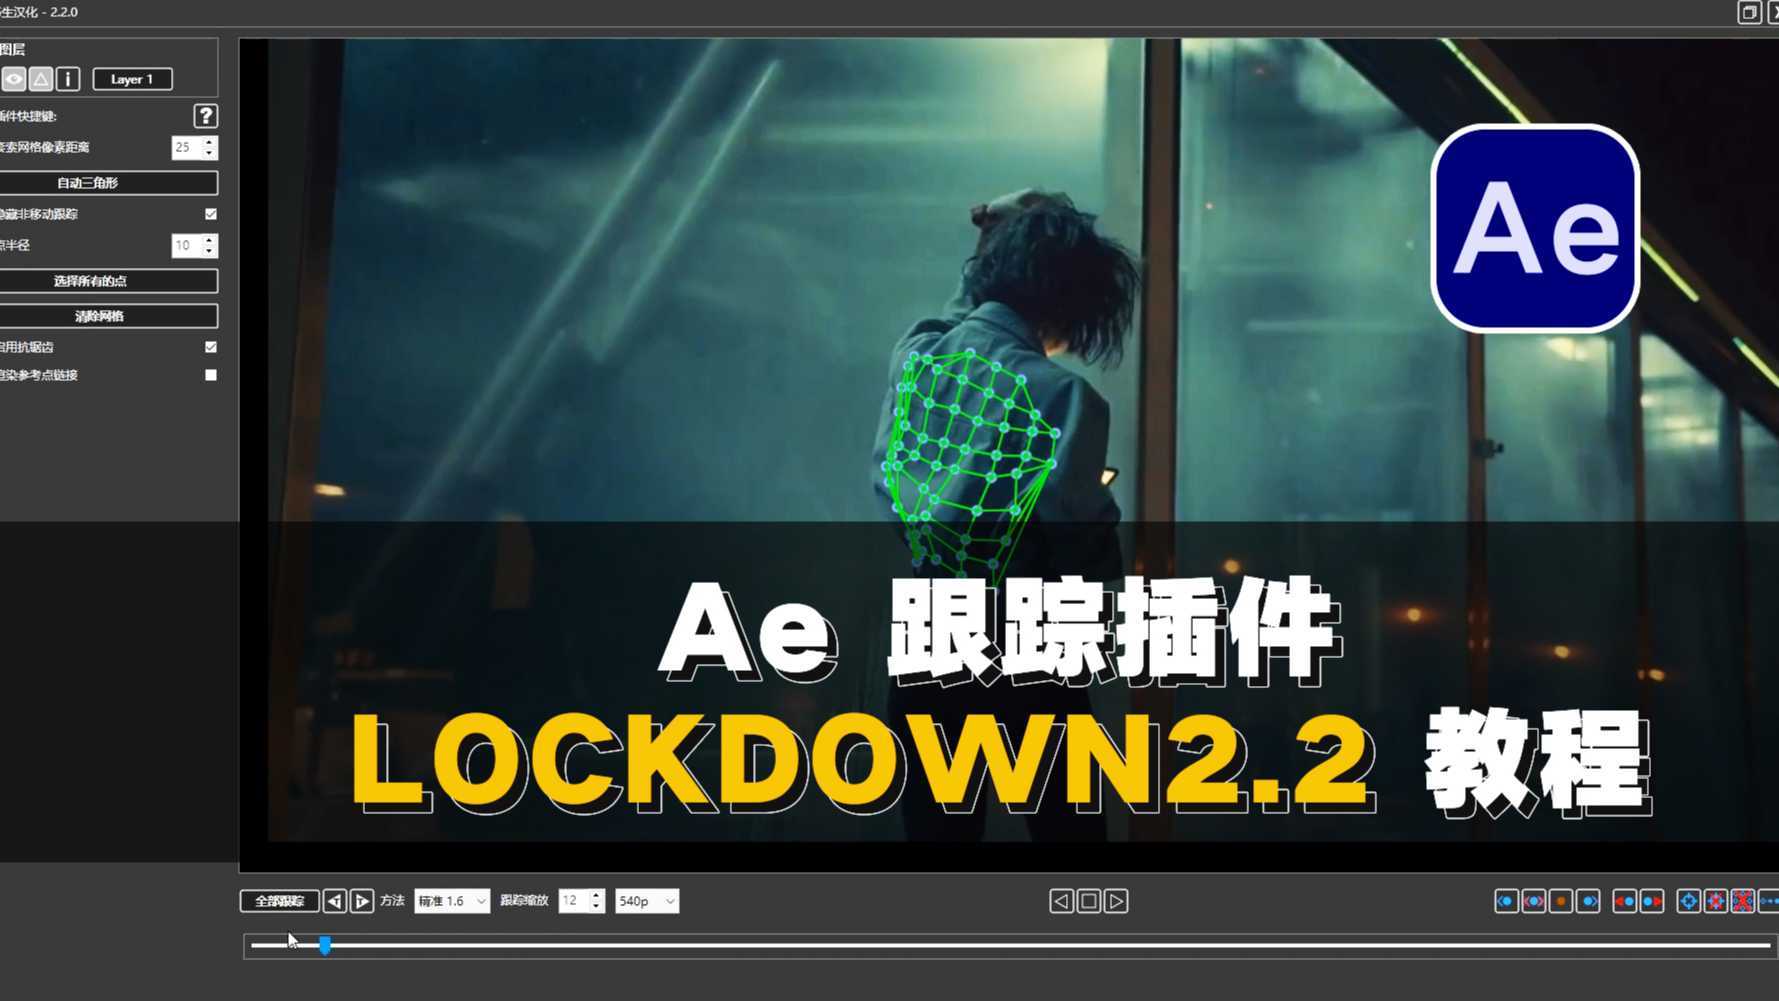 AE跟踪插件lockdown2.2特效跟踪教程